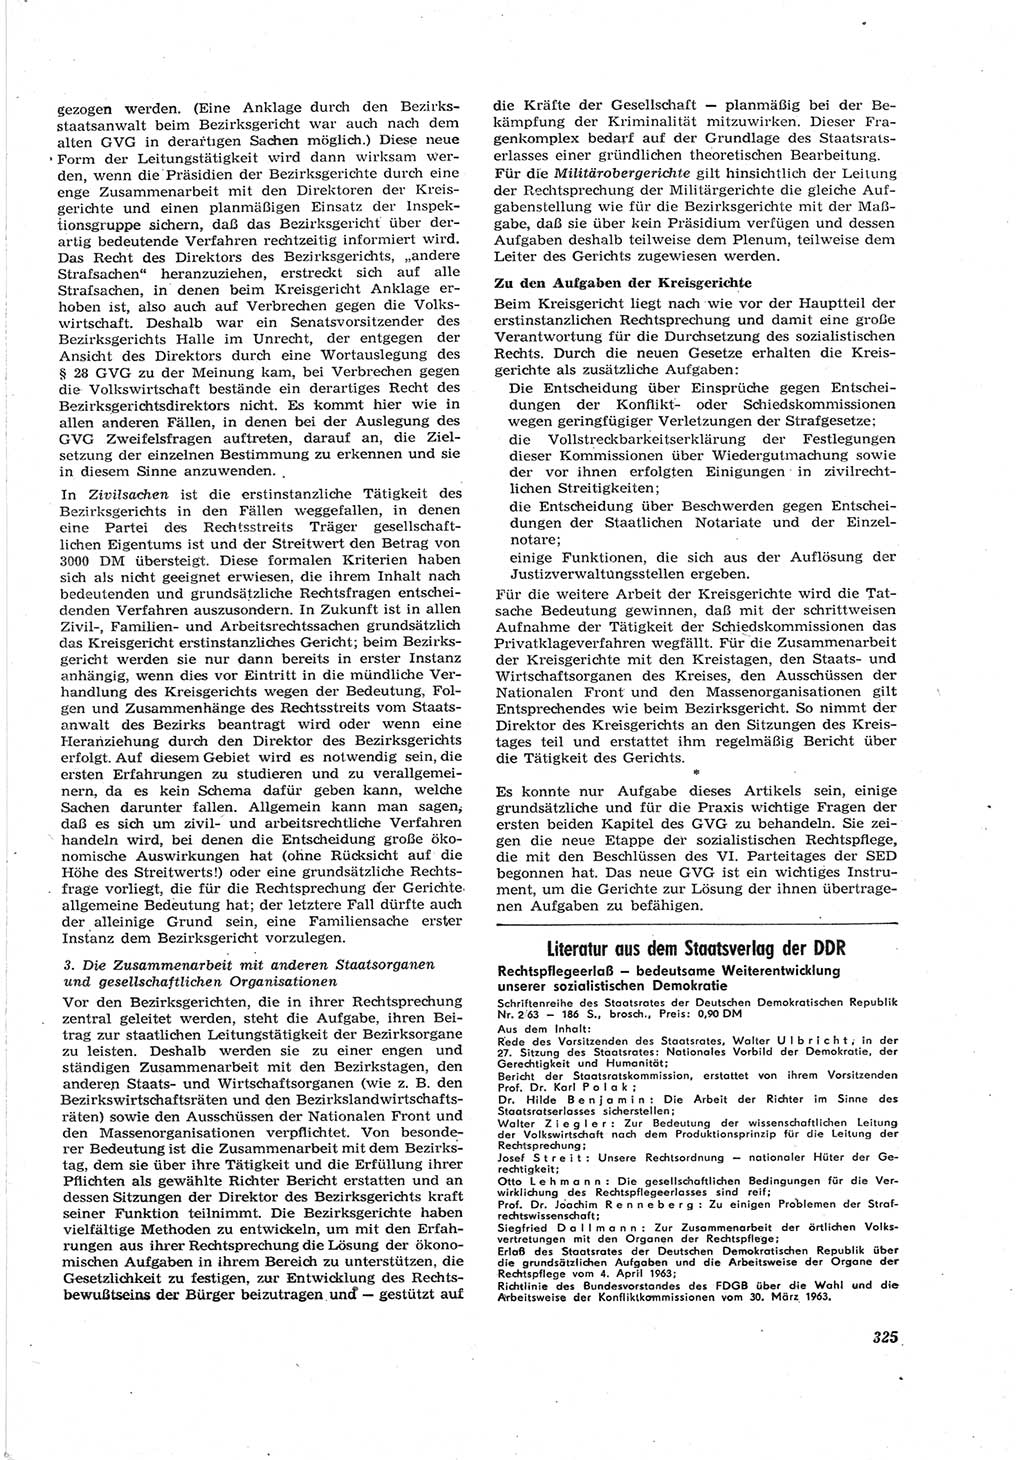 Neue Justiz (NJ), Zeitschrift für Recht und Rechtswissenschaft [Deutsche Demokratische Republik (DDR)], 17. Jahrgang 1963, Seite 325 (NJ DDR 1963, S. 325)